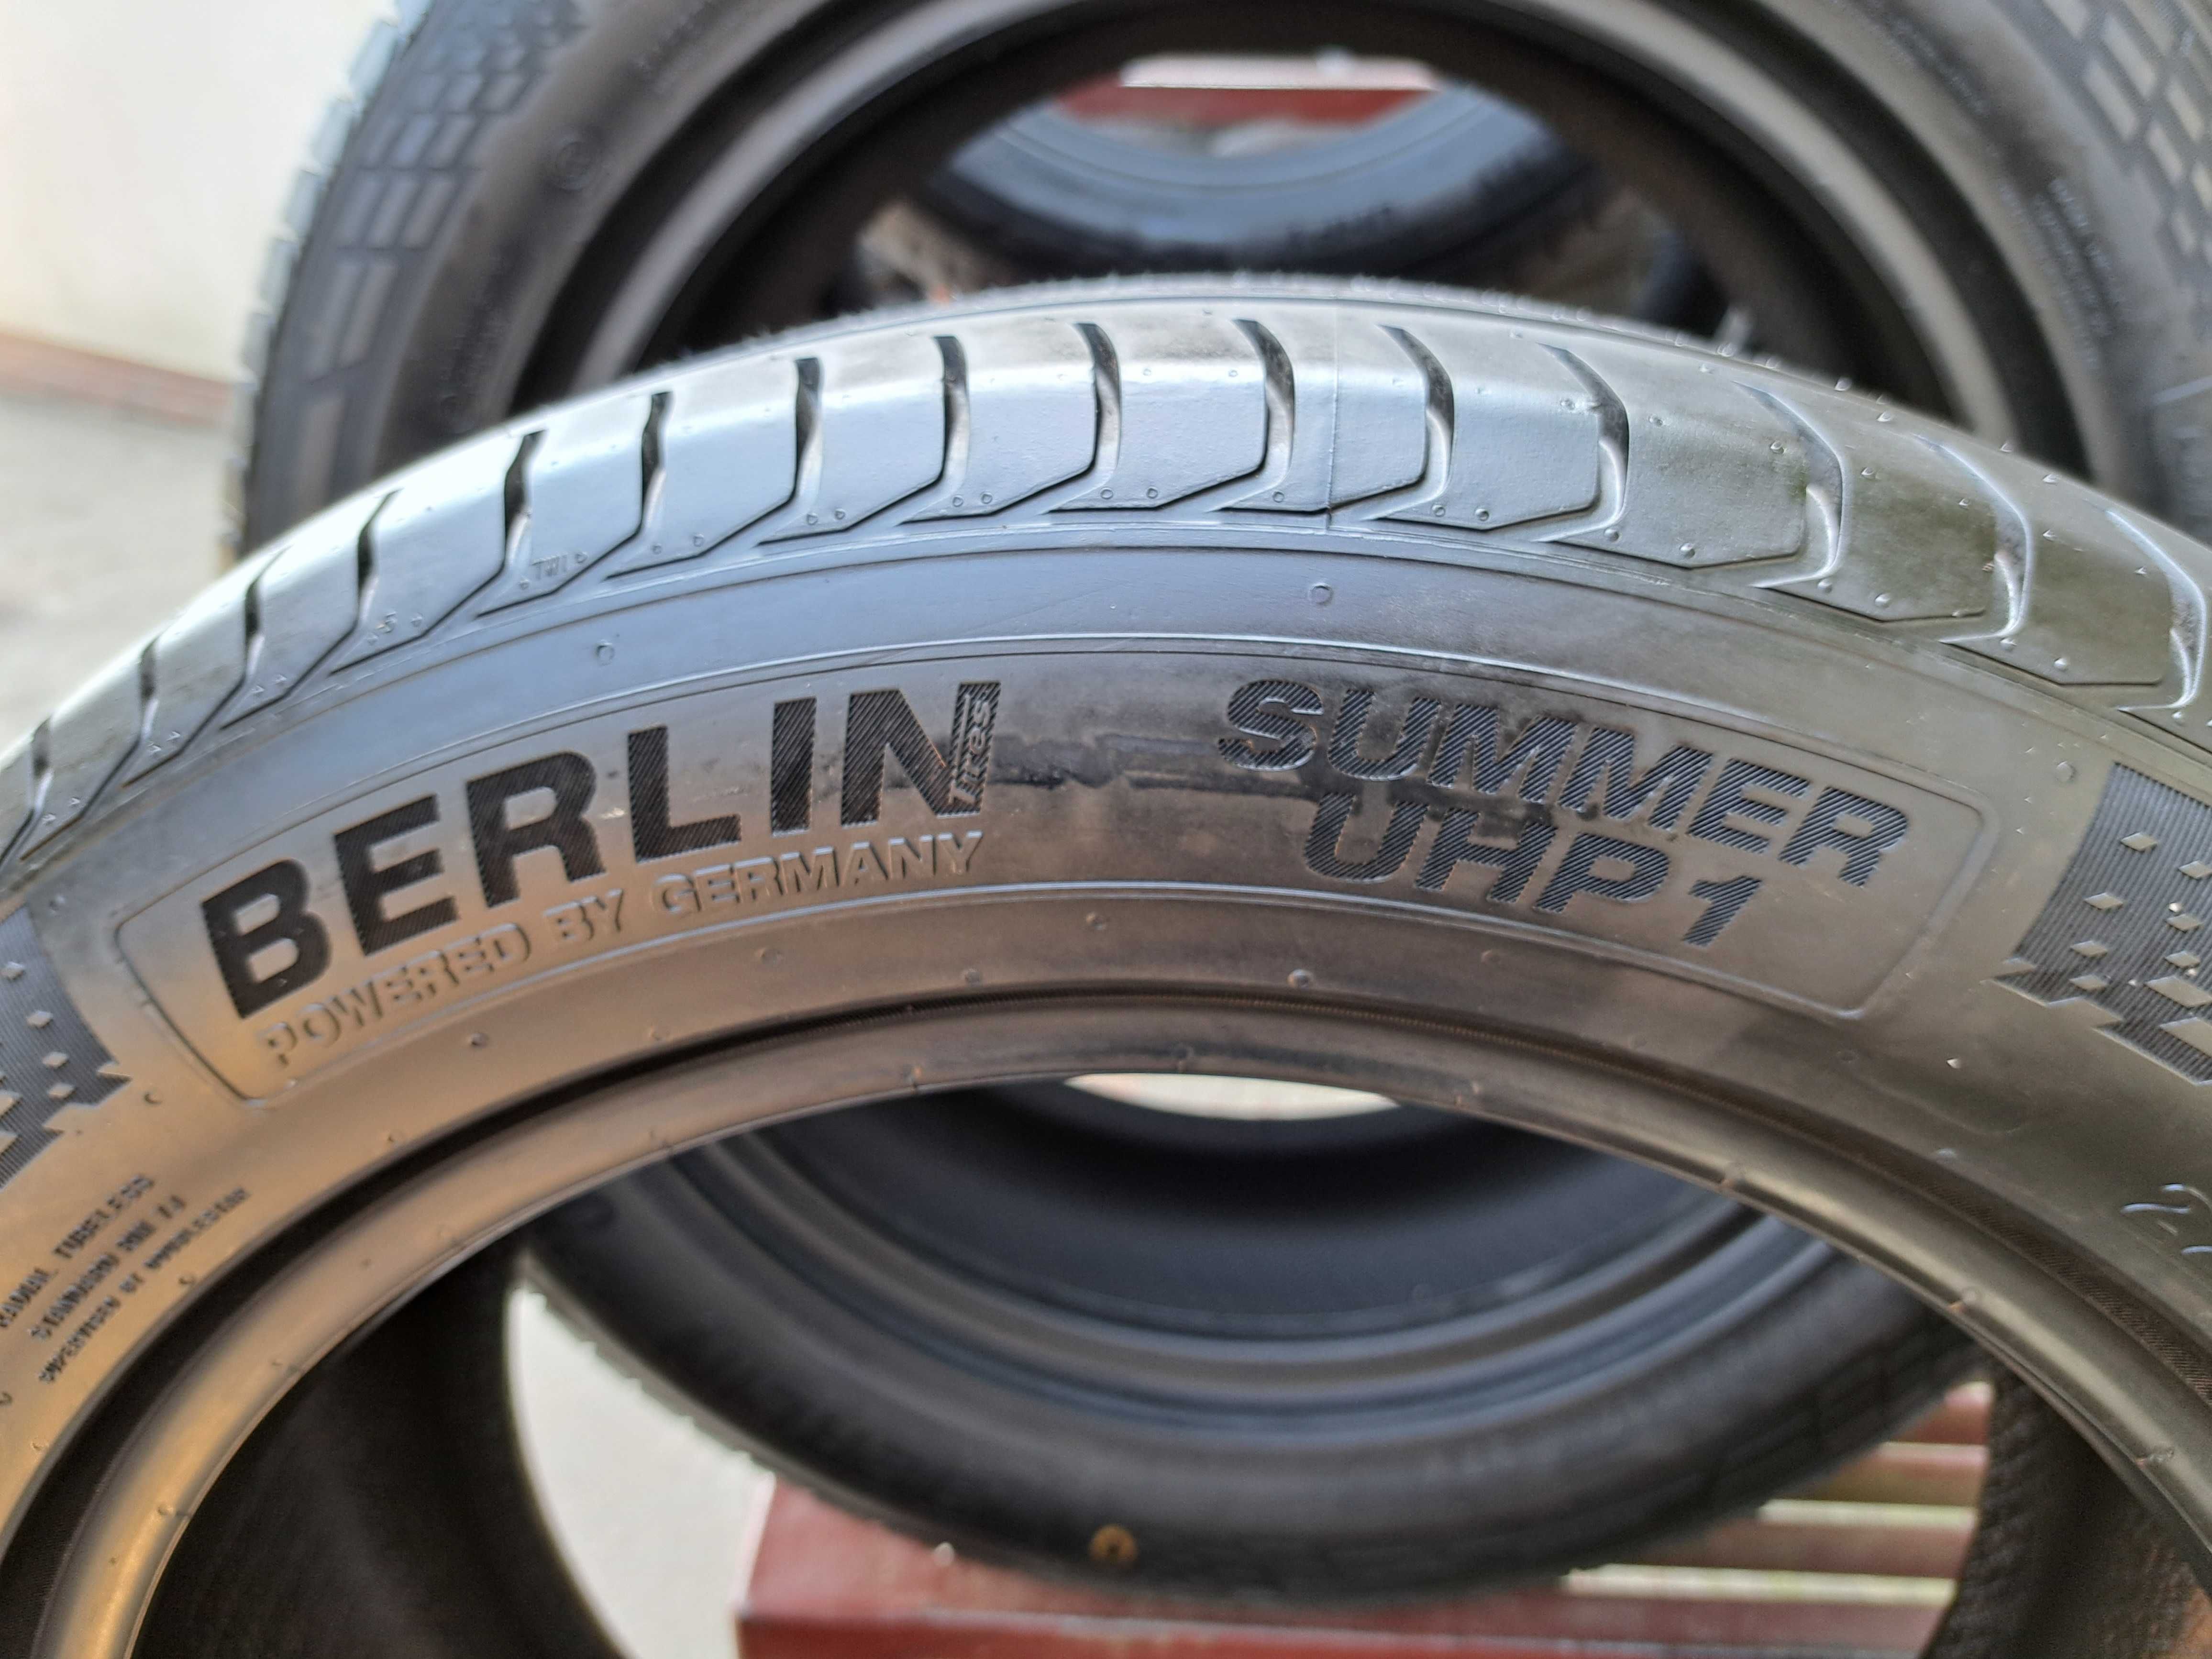 4 Opony NOWE letnie 225/55 R17 Berlin Tires Montaż i wyważanie Gratis!